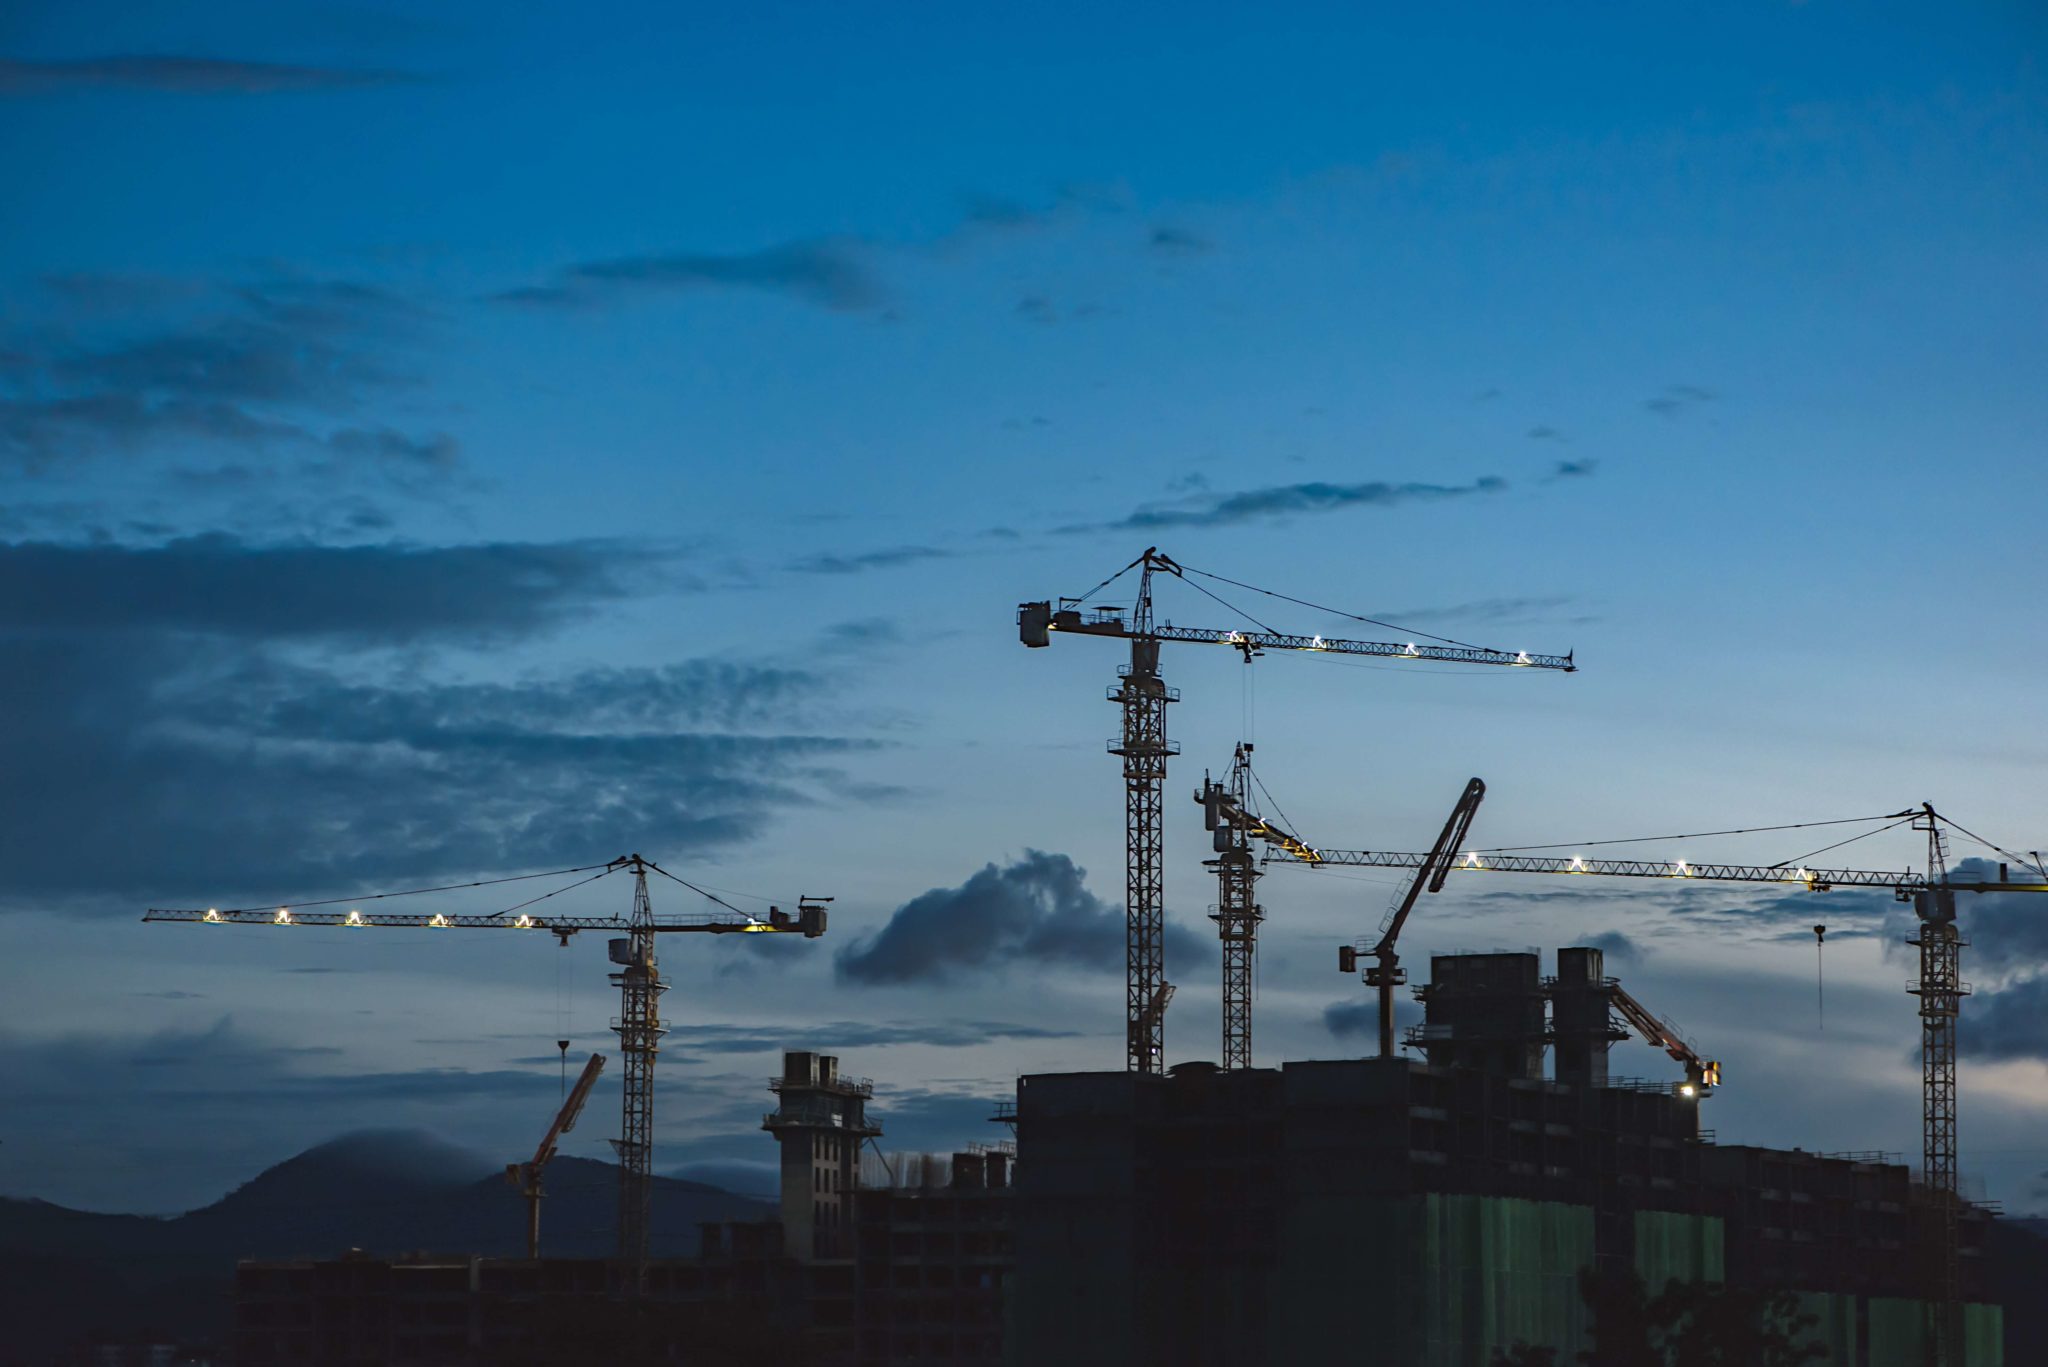 Constructions cranes at dusk